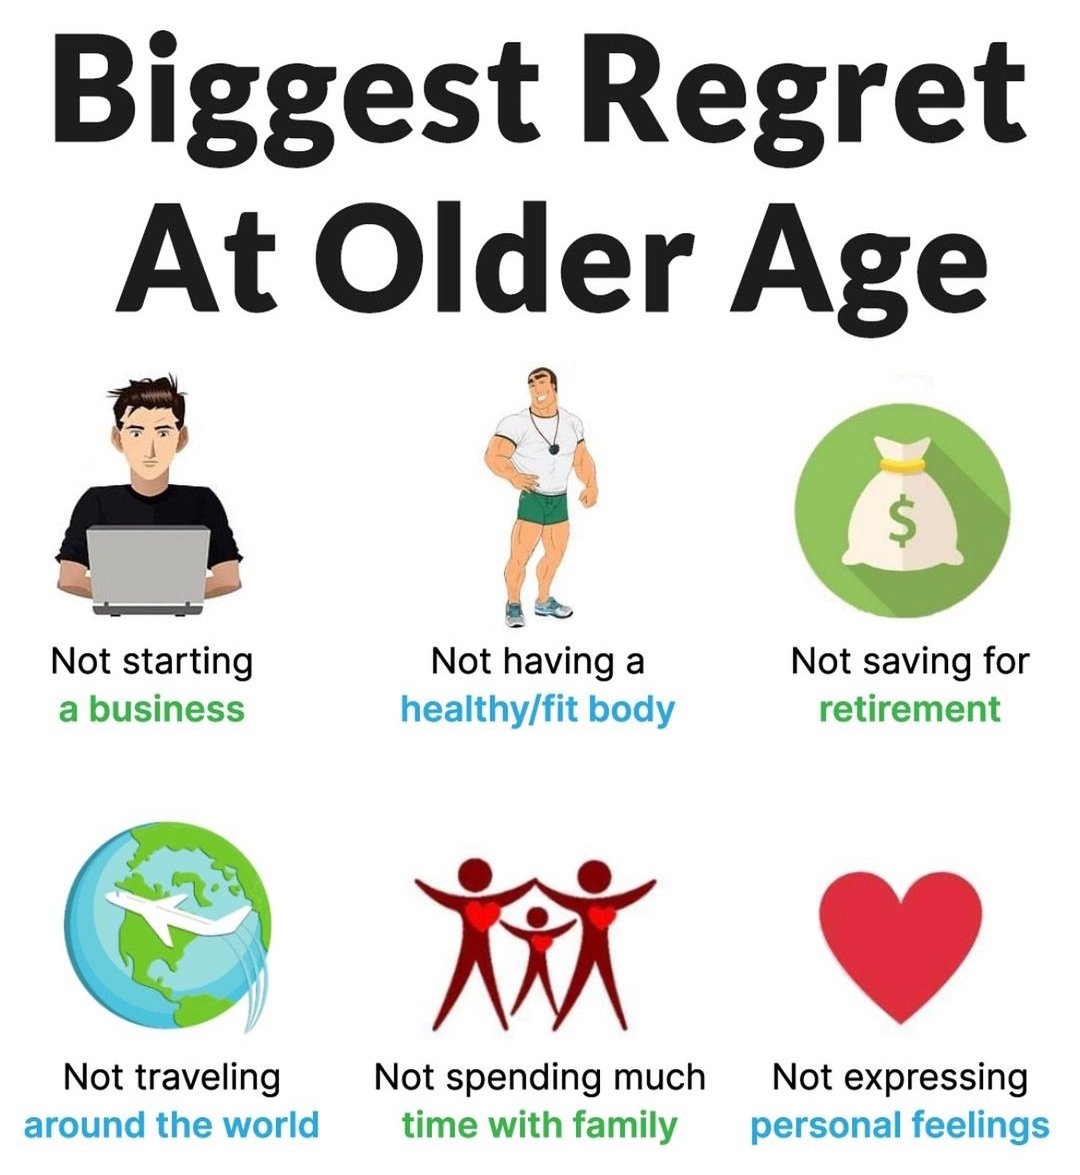 Biggest Regret at Older Age :